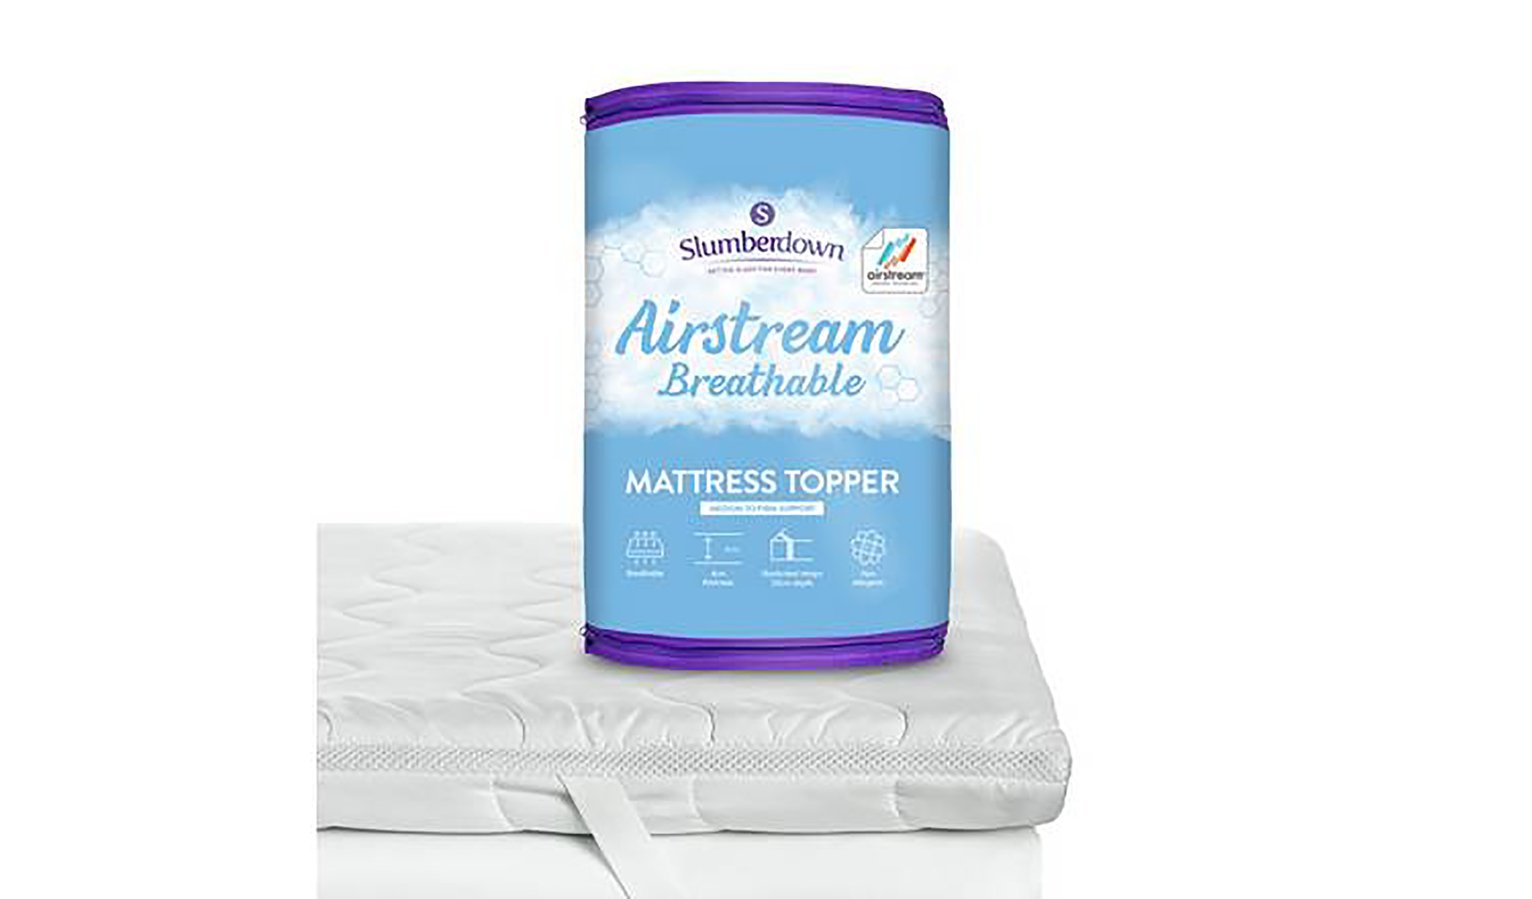 slumberdown airstream mattress topper double